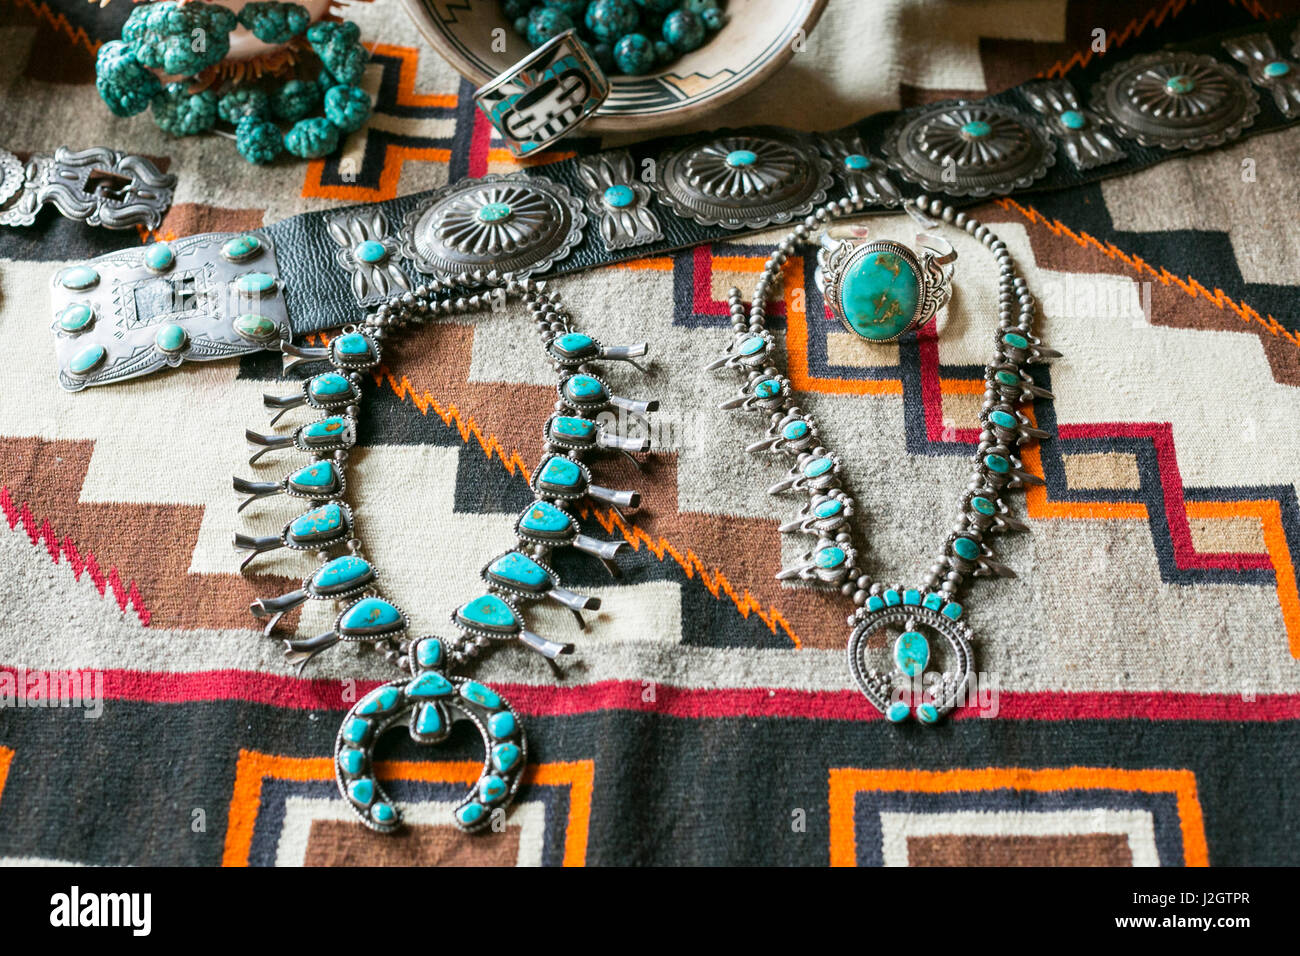 Bijoux turquoise exposés à la vente, Santa Fe, Nouveau Mexique, USA. Banque D'Images